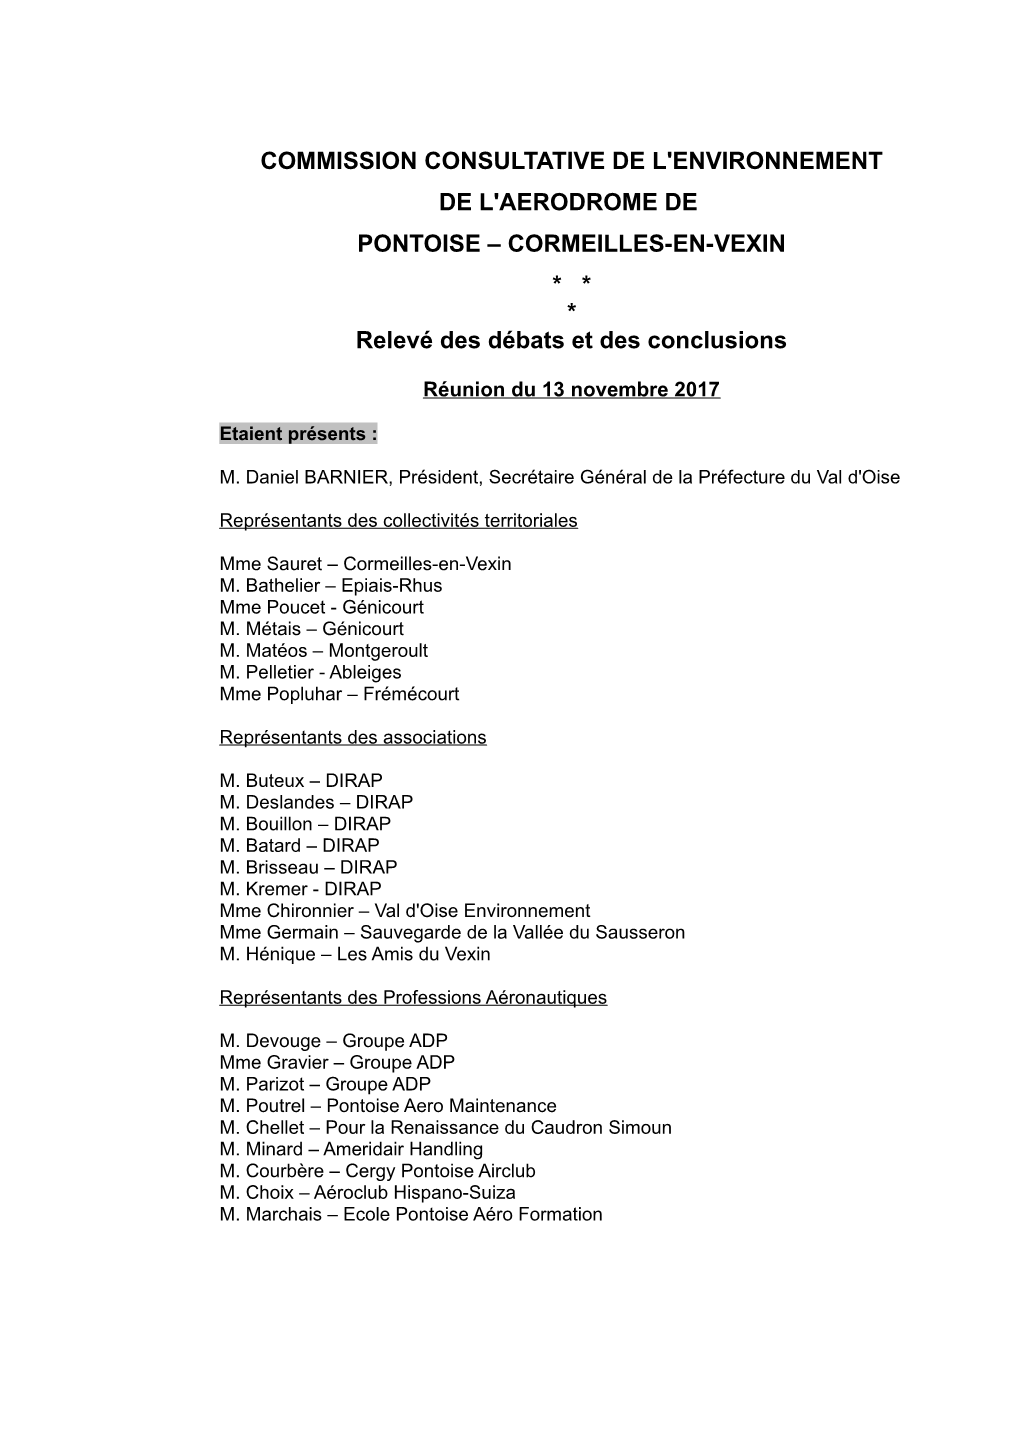 CCE Pontoise-Cormeilles 13 Novembre 2017